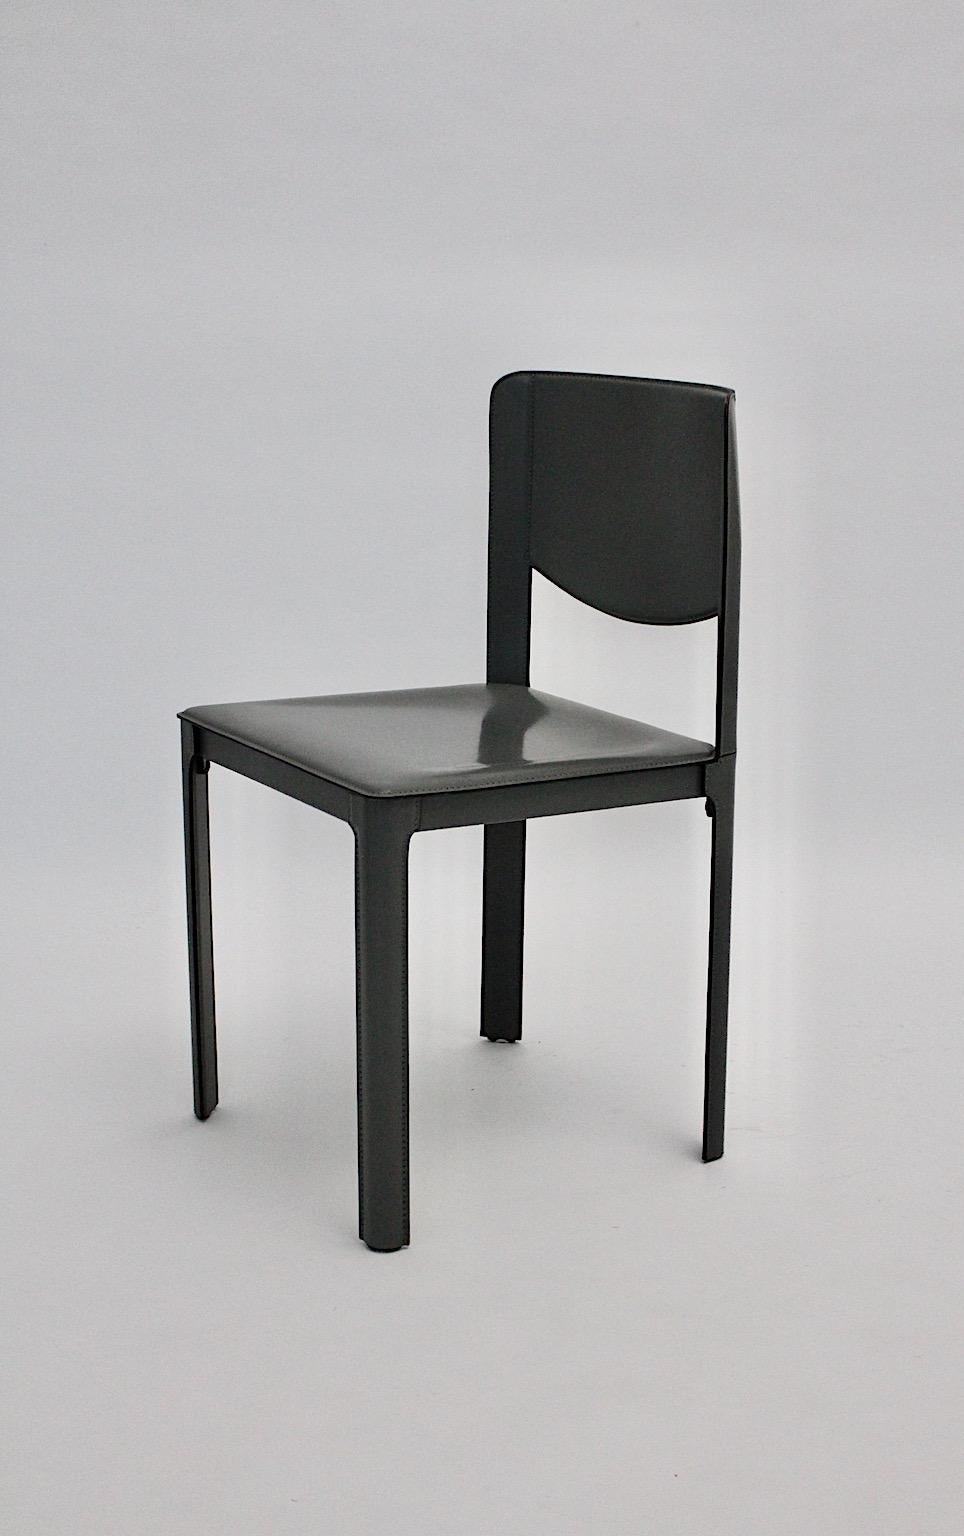 Ein Matteo Grassi vintage grauer Lederstuhl oder Beistellstuhl, der in den 1980er Jahren in Italien entworfen und hergestellt wurde.
Der stabile und bequeme High-End-Sessel ist komplett mit grauem, abgestepptem Sattelleder bezogen und mit dem